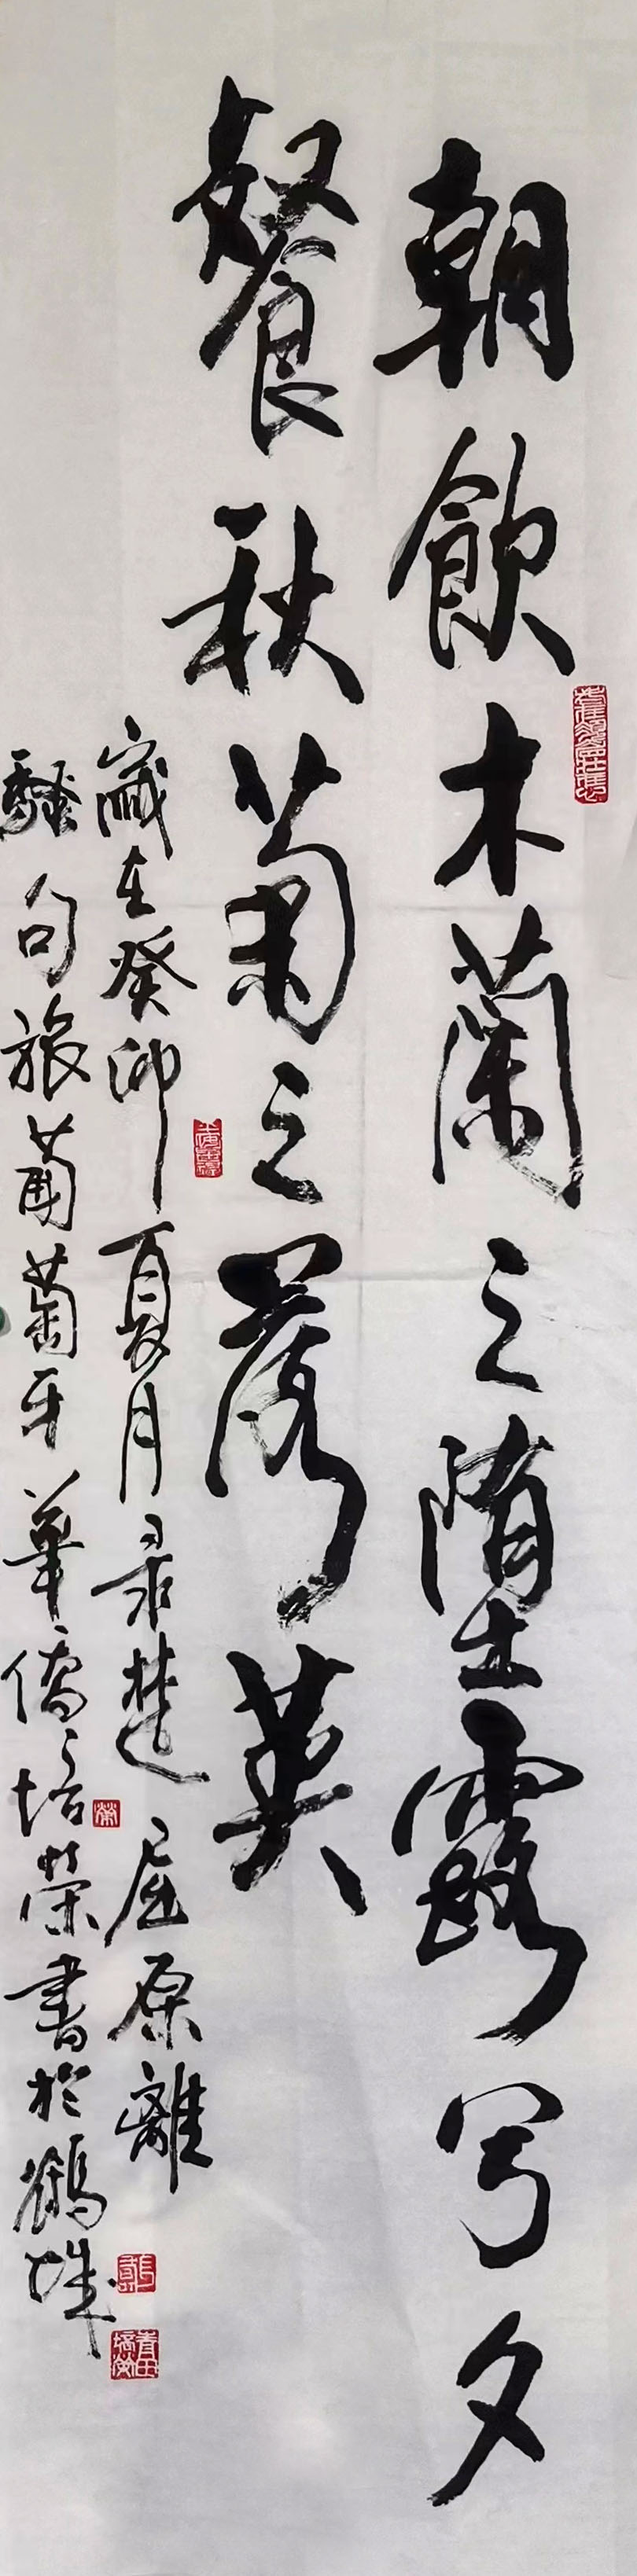 《飞龙在天 浓情端午》海内外华人艺术家共庆佳节书画展(图156)